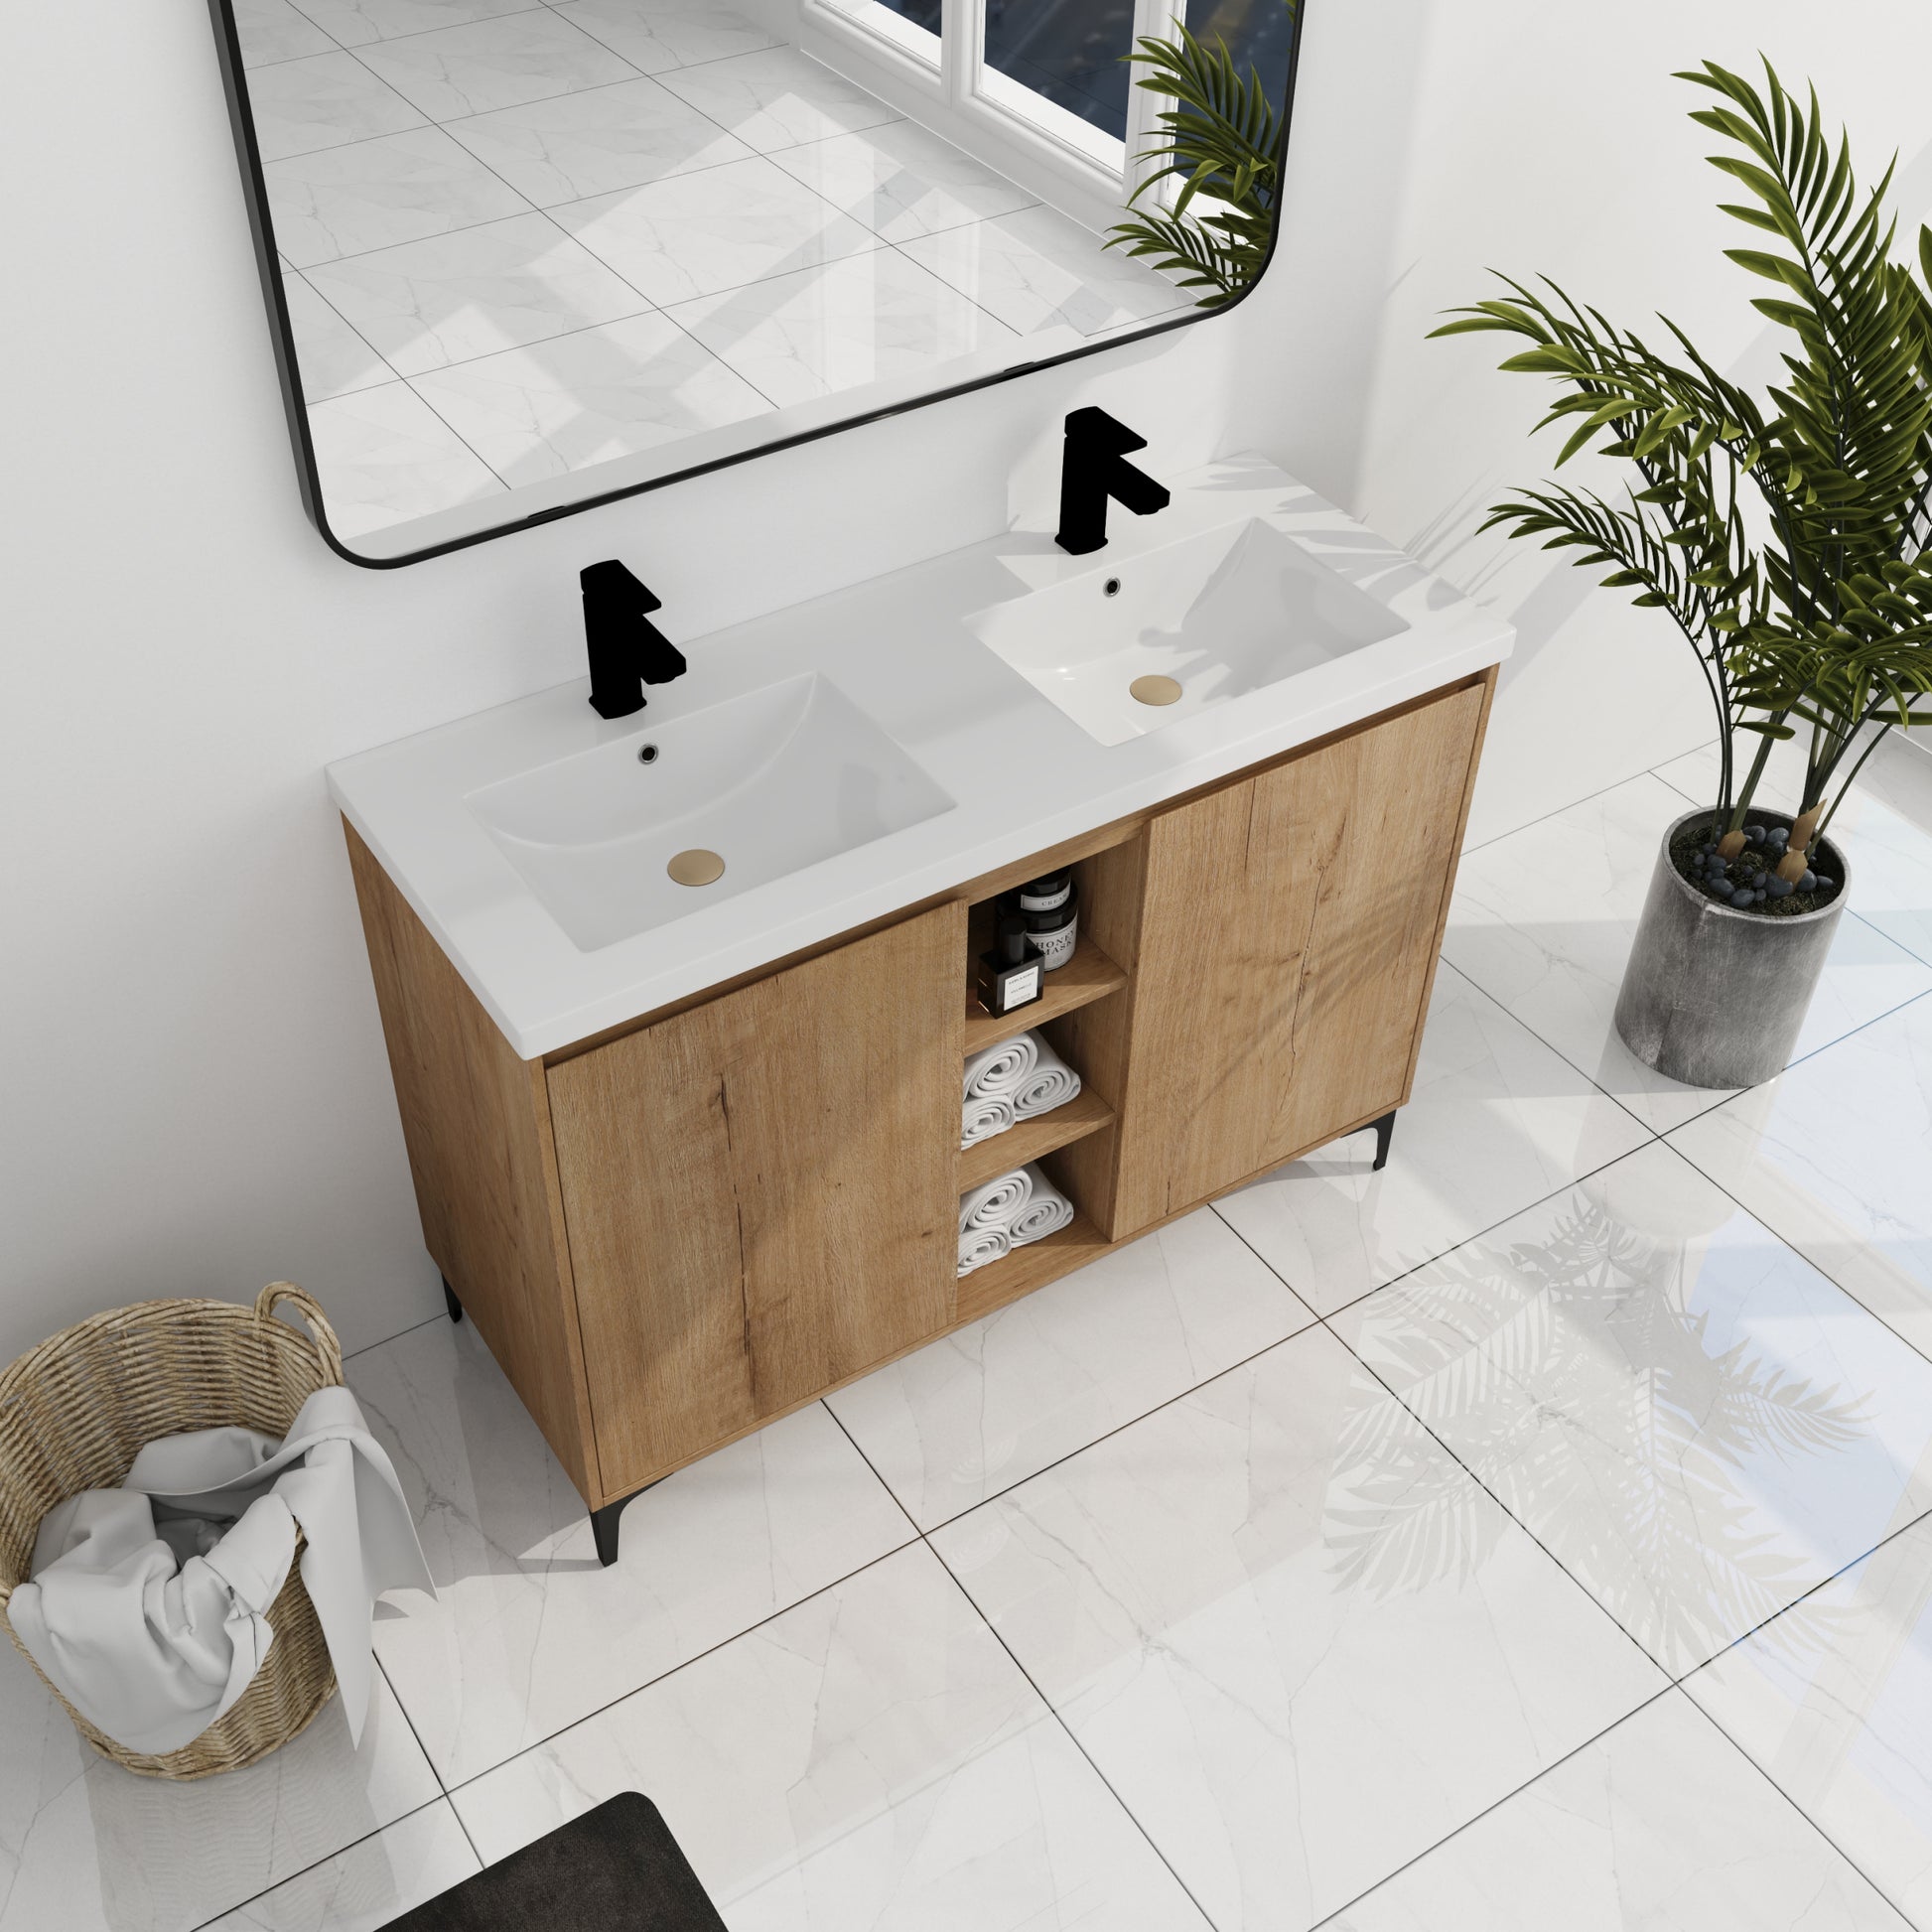 48" Freestanding Bathroom Vanity With Double Sink imitative